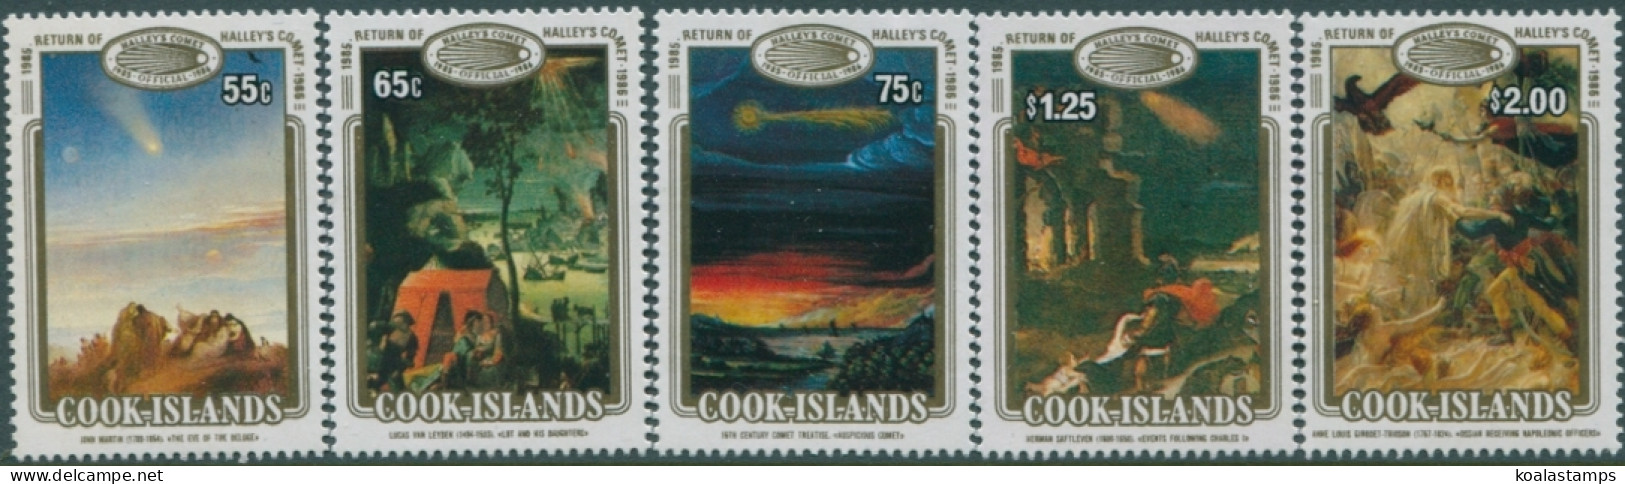 Cook Islands 1986 SG1058-1062 Halley's Comet Set MNH - Cookeilanden